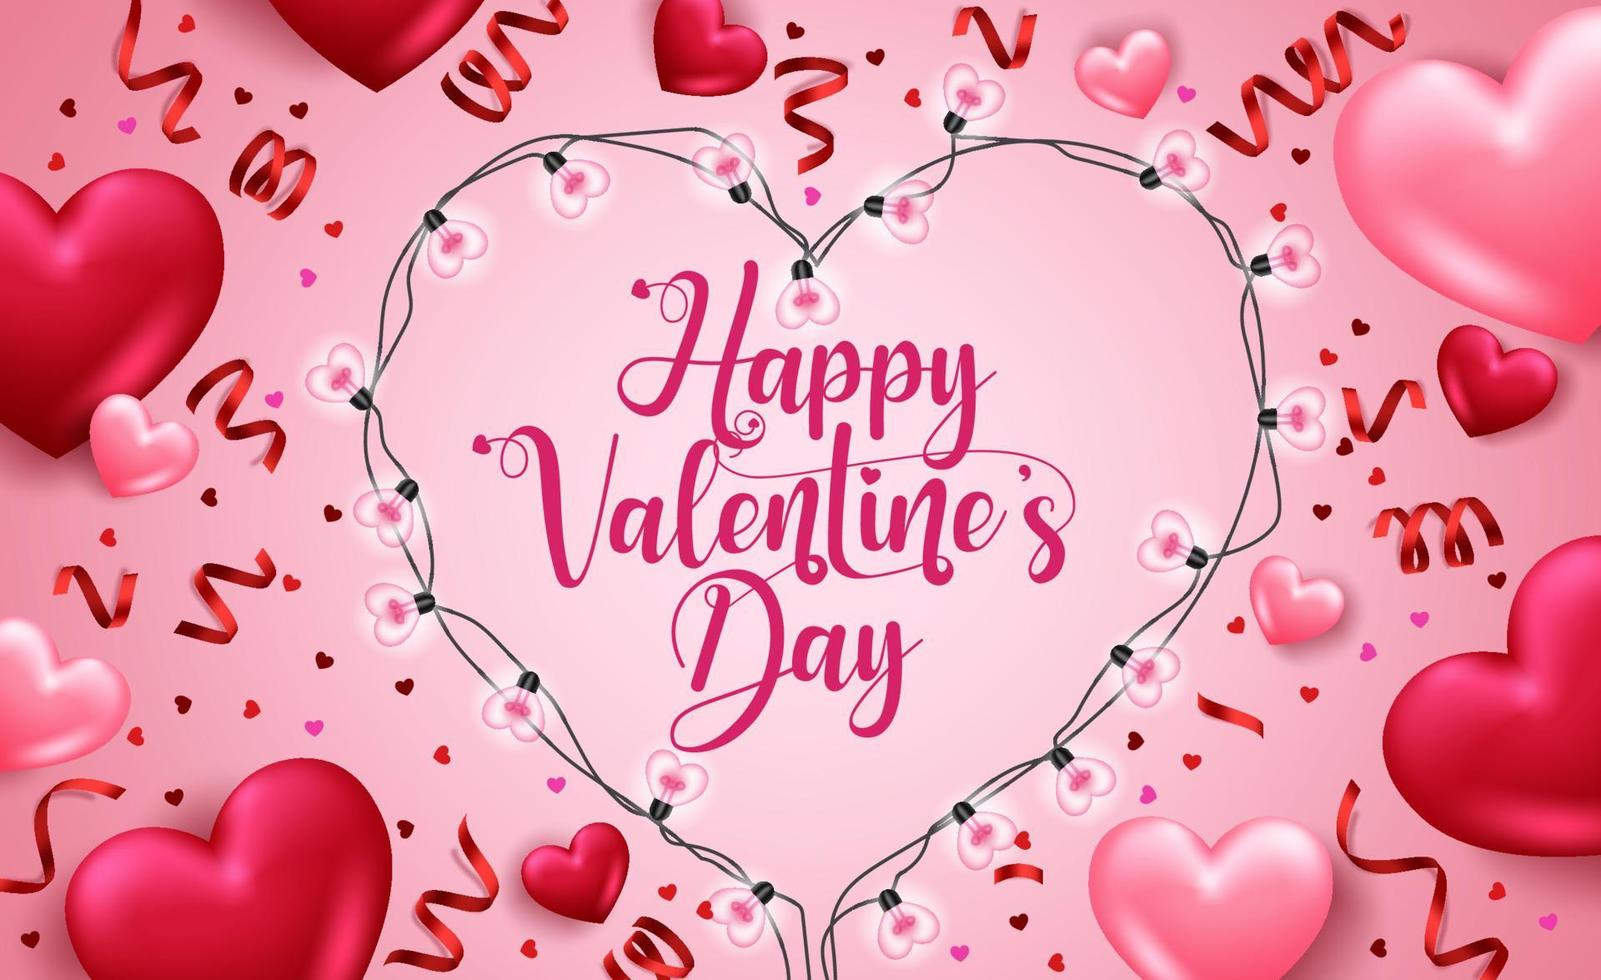 Valentinstag Vektor Hintergrunddesign. Happy Valentine's Day Text mit 3D-Herzen, Herzformlicht und Konfetti-Dekorationselementen für die Gestaltung von Valentinstagskarten. Vektor-Illustration